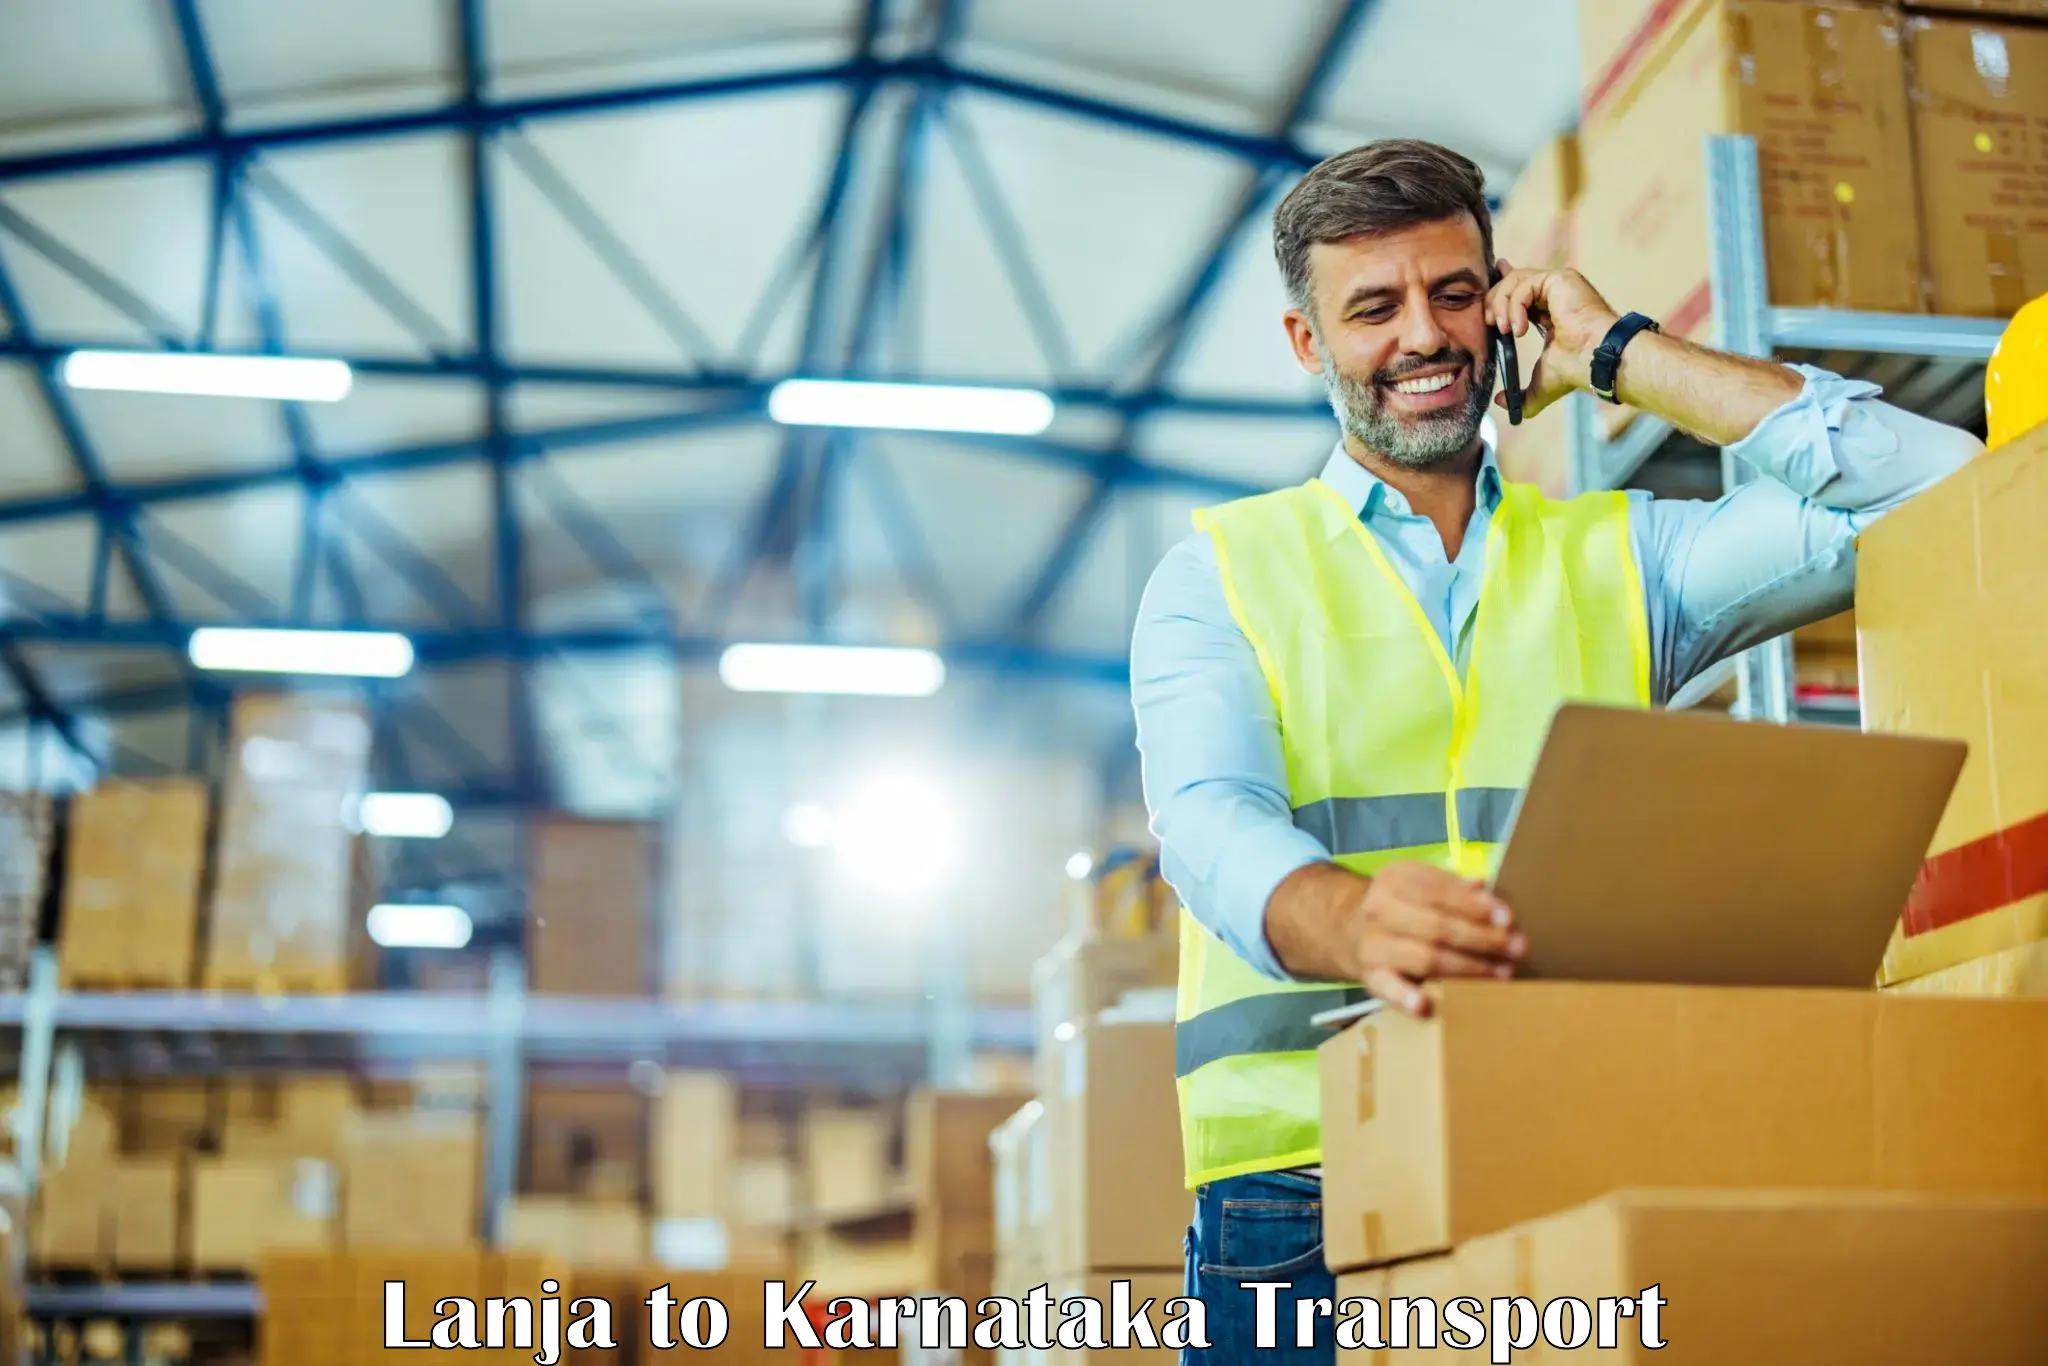 Transport in sharing Lanja to Karnataka